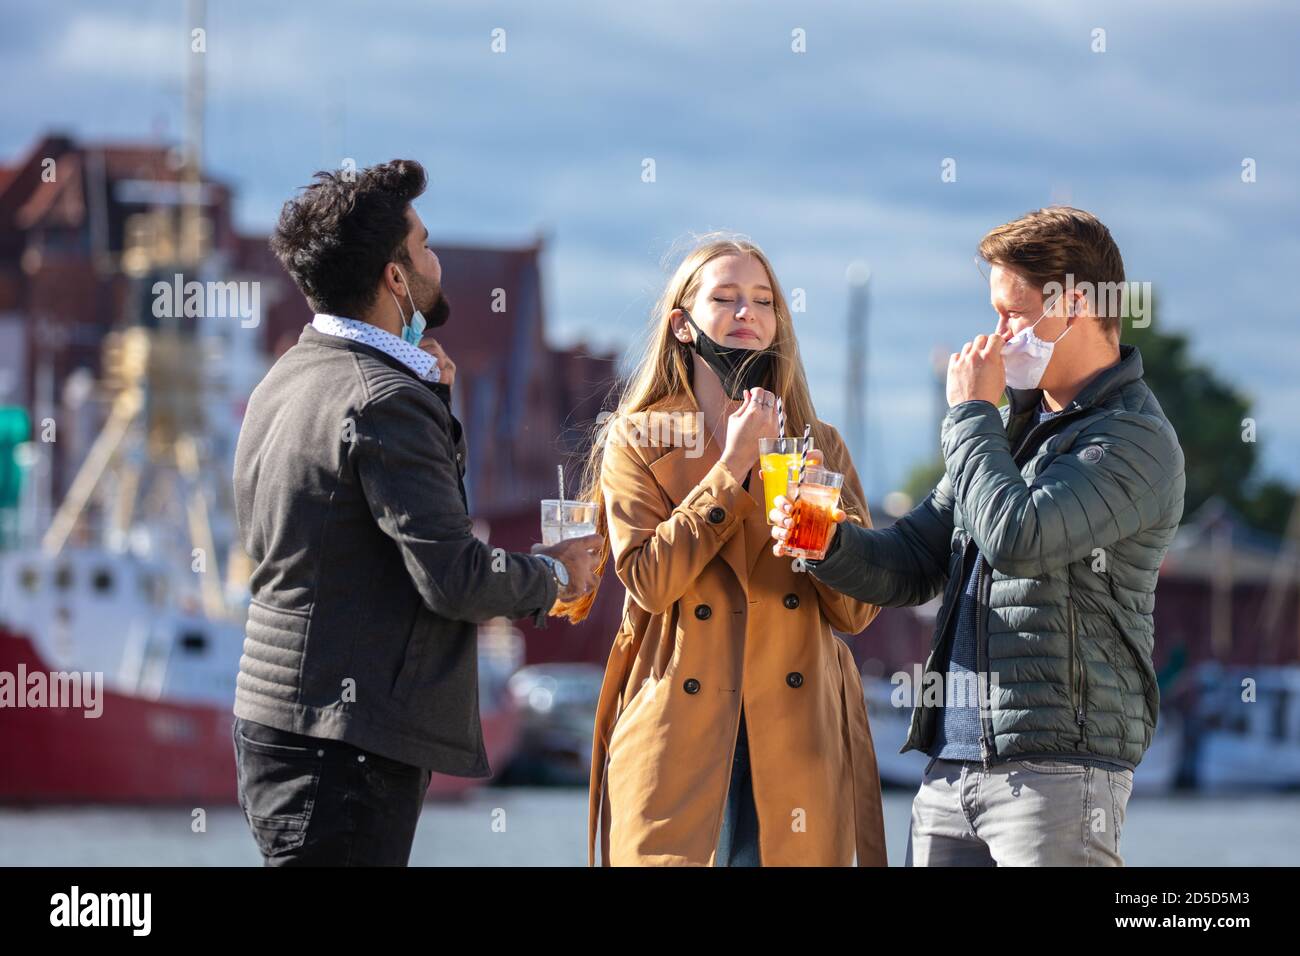 Zwei Männer und eine Frau in Corona-Zeit, mit alltäglichen Masken, in der kalten Jahreszeit in der Stadt unterwegs. Getränke im Freien. Stock Photo